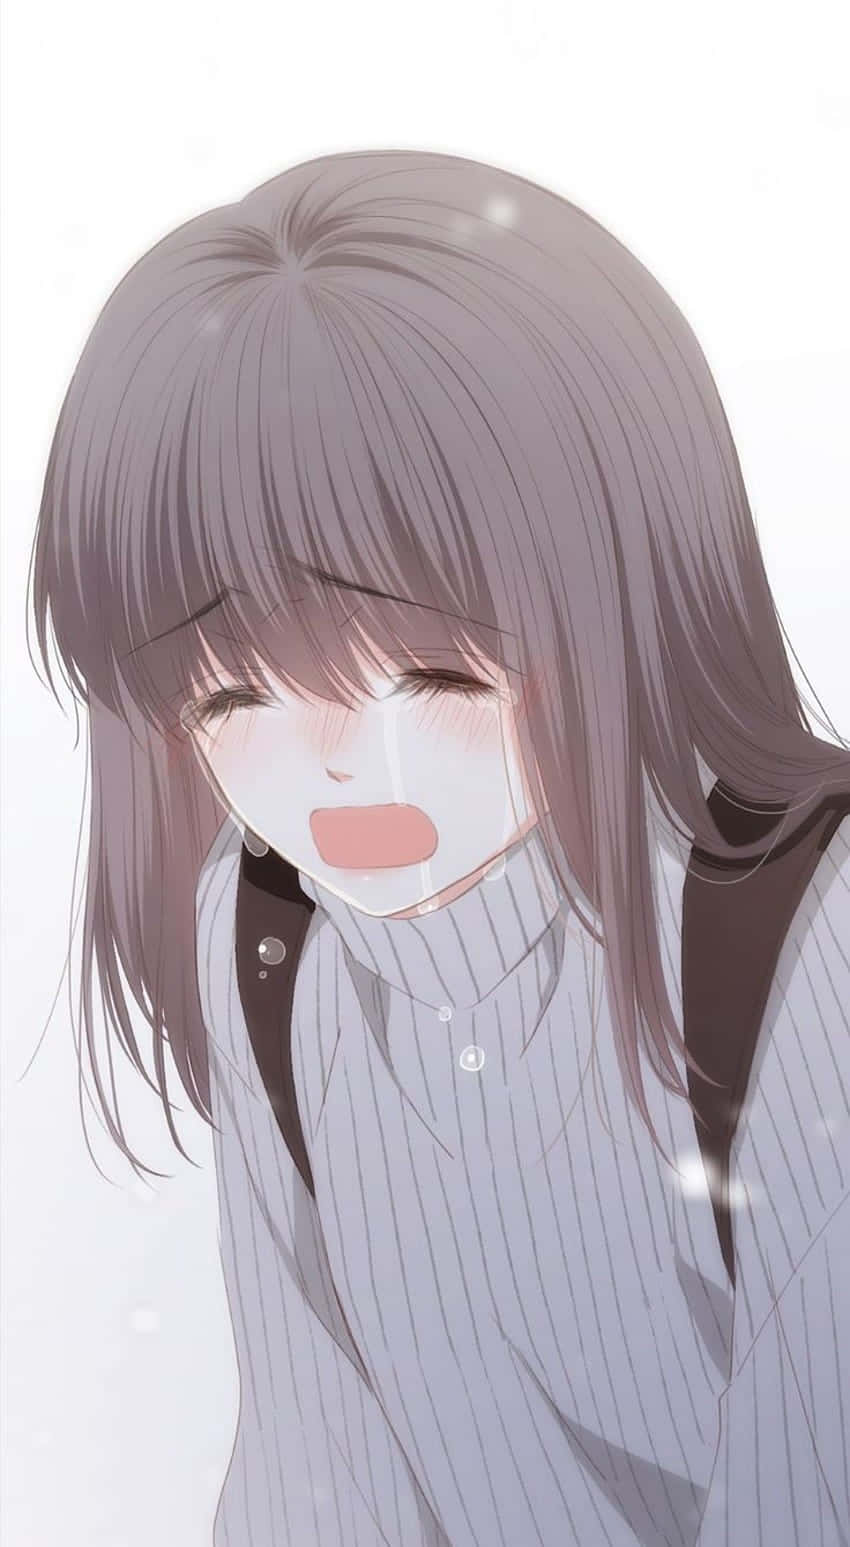 Upset Anime Girl Tears Wallpaper